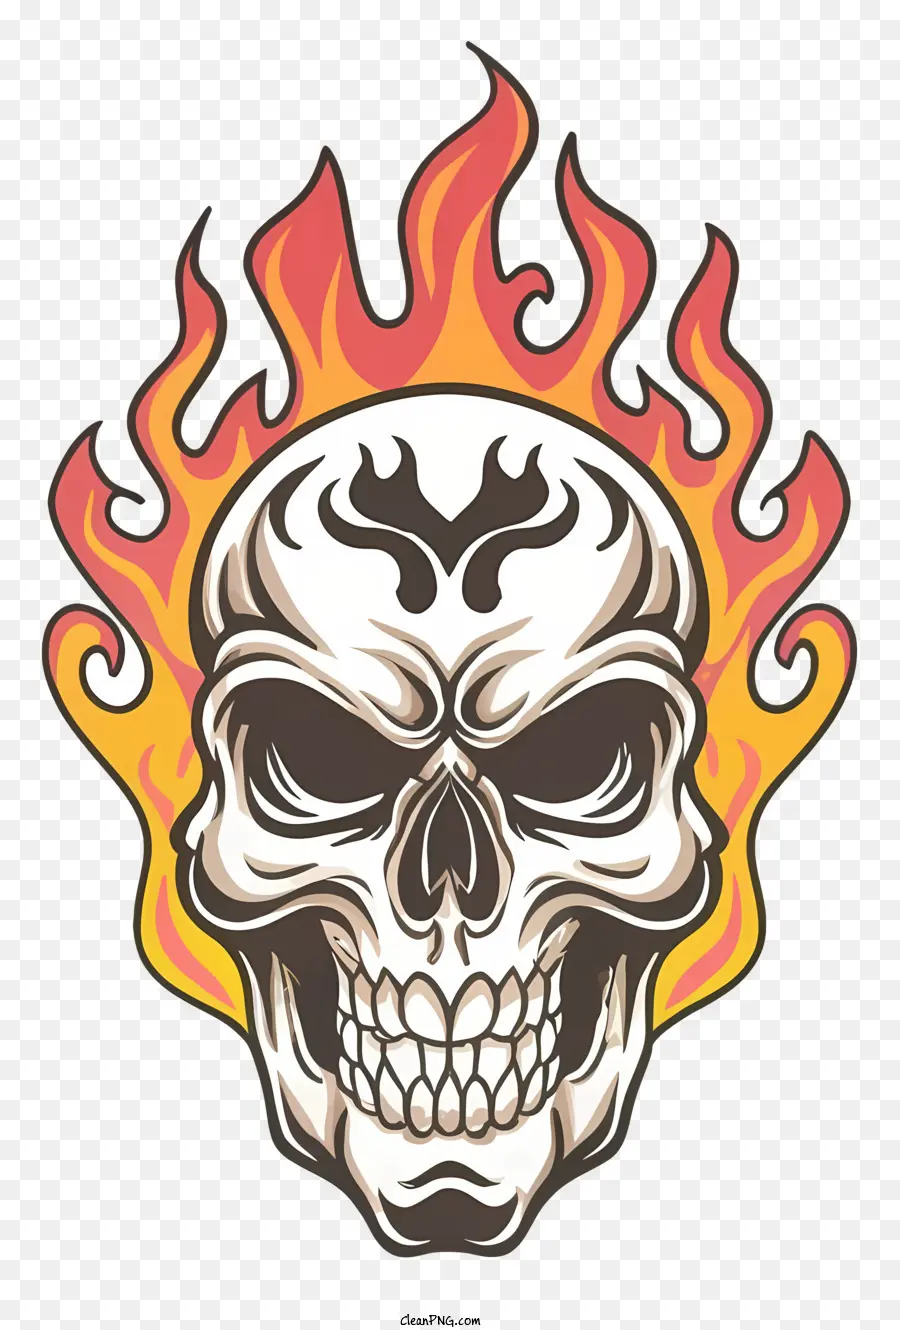 Skull with Fiames Death and Destruction Life e rinascita del simbolismo dell'immagine oscura e intensa del cranio e delle fiamme - Immagine scura del cranio con fiamme simboleggia la morte, la vita e l'intensità